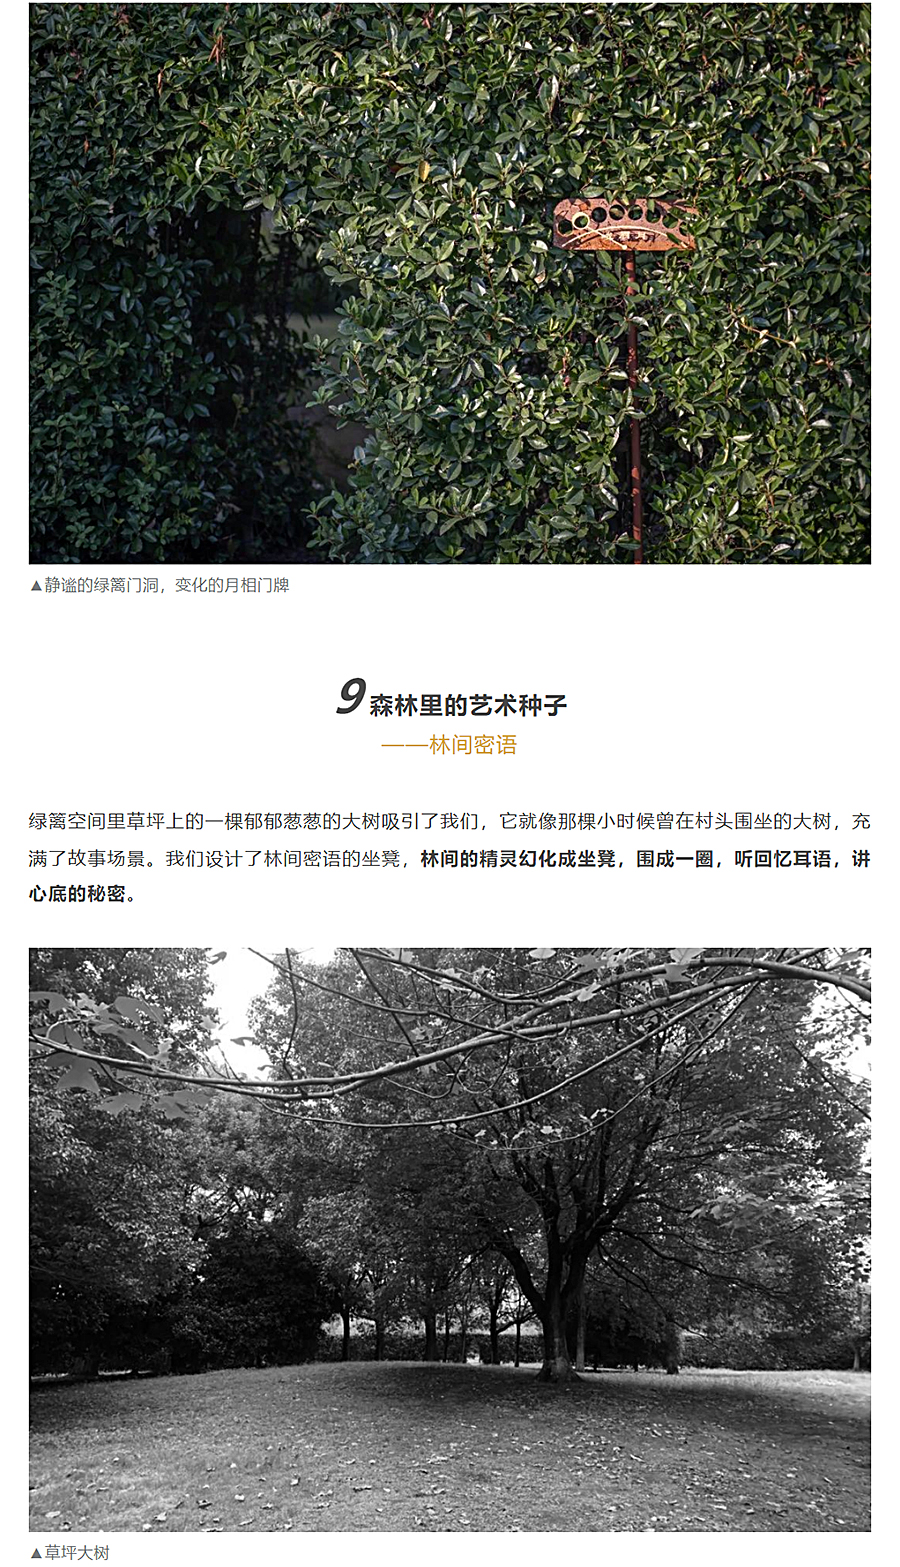 迭新作品-│-安道设计：中国田园城市范本的微更新改造_0018_图层-19.jpg